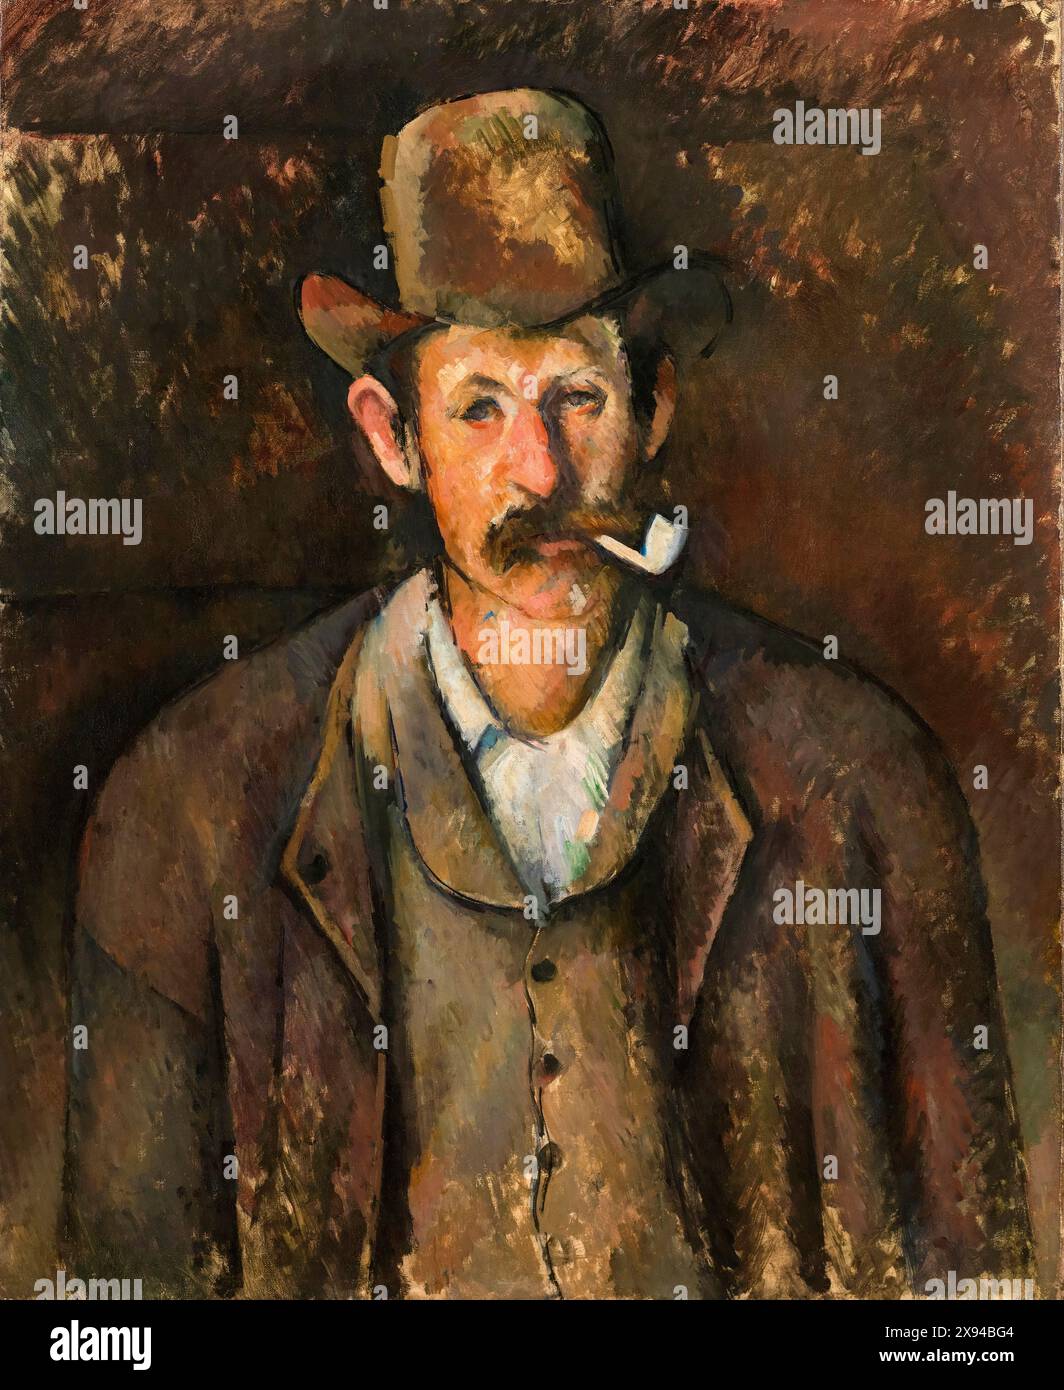 Paul Cézanne, homme au Pipe, portrait peint à l'huile sur toile, 1892-1896 Banque D'Images